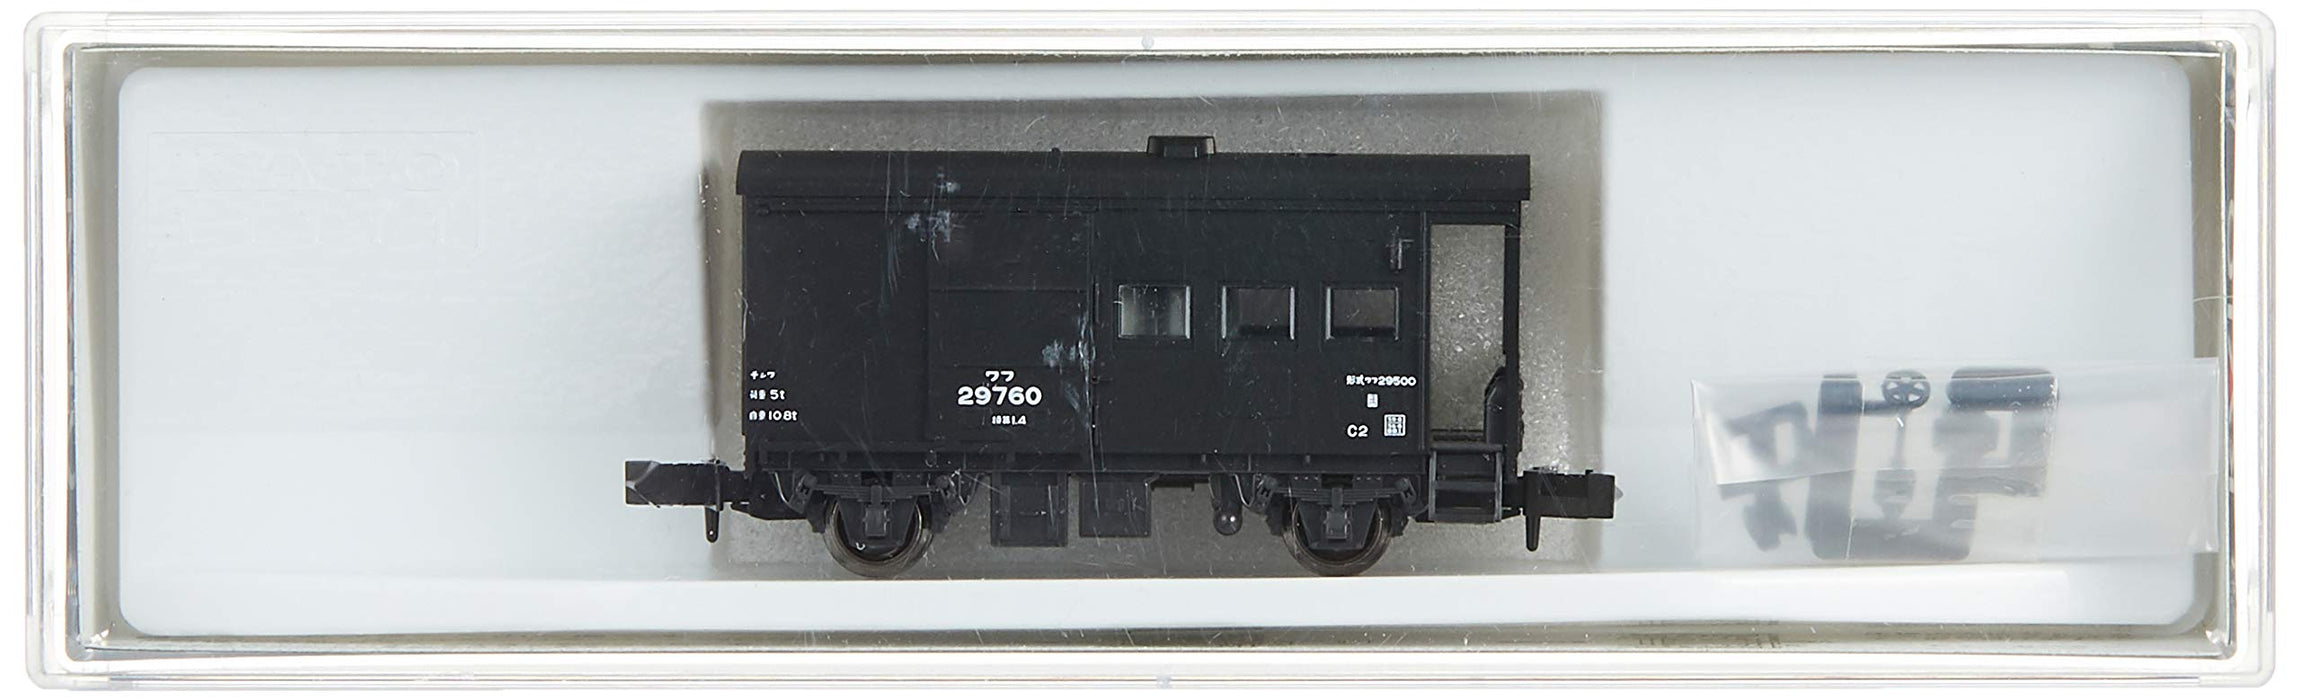 Kato 29500 8030 - Modell-Güterwagen, Spur N, Eisenbahn-Sammlerstück von Kato